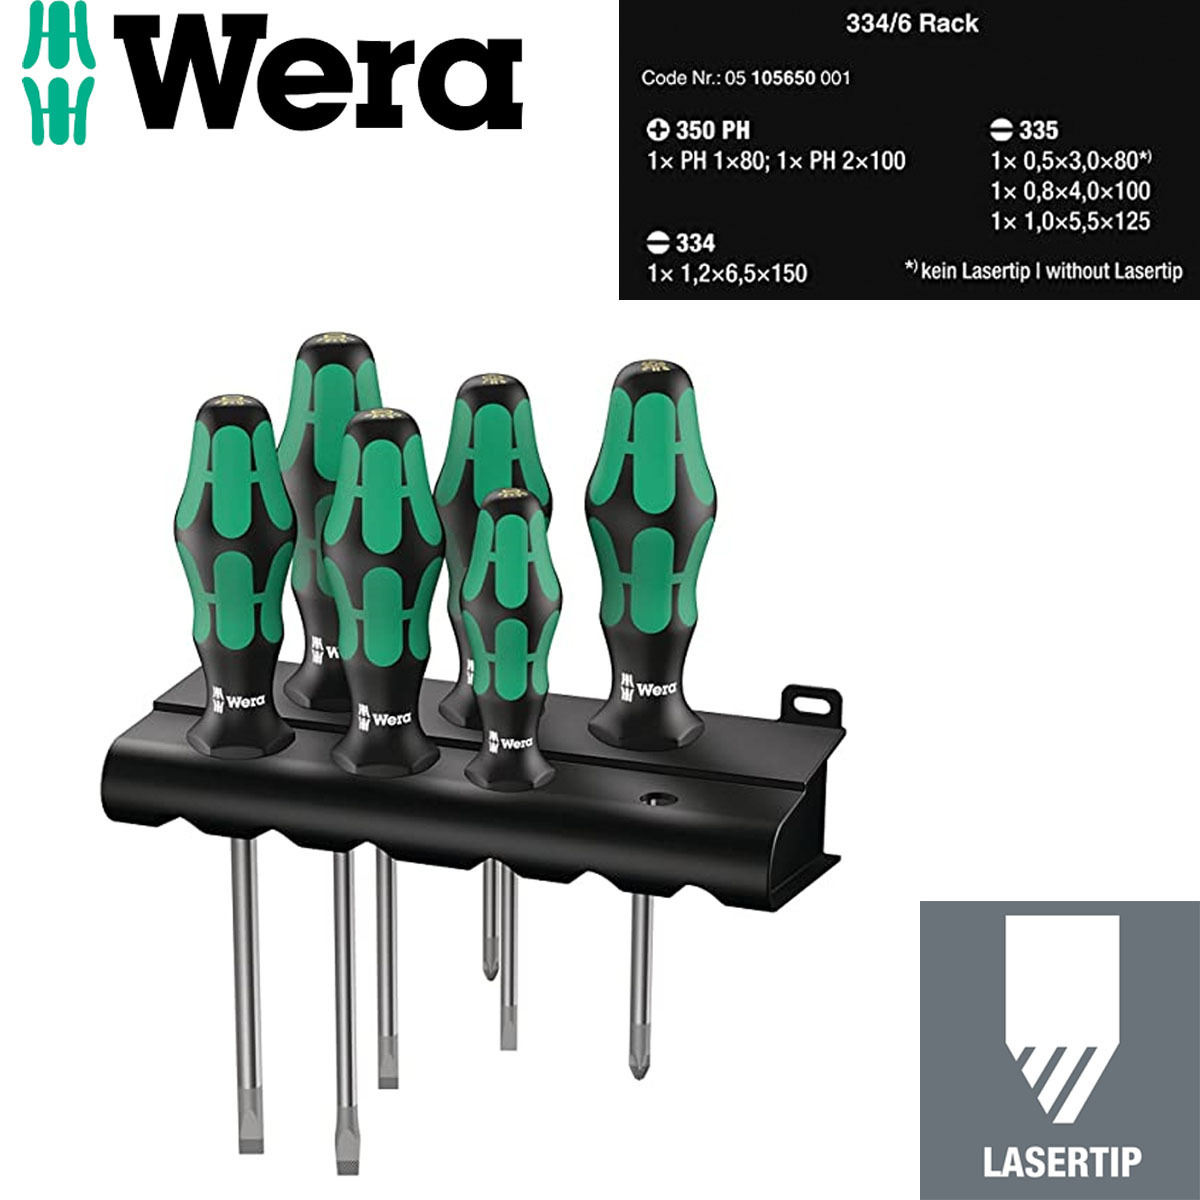 Wera(ヴェラ) クラフトフォーム レーザーチップドライバーセット6本組 334/6 ラック付き Kraftform 105650